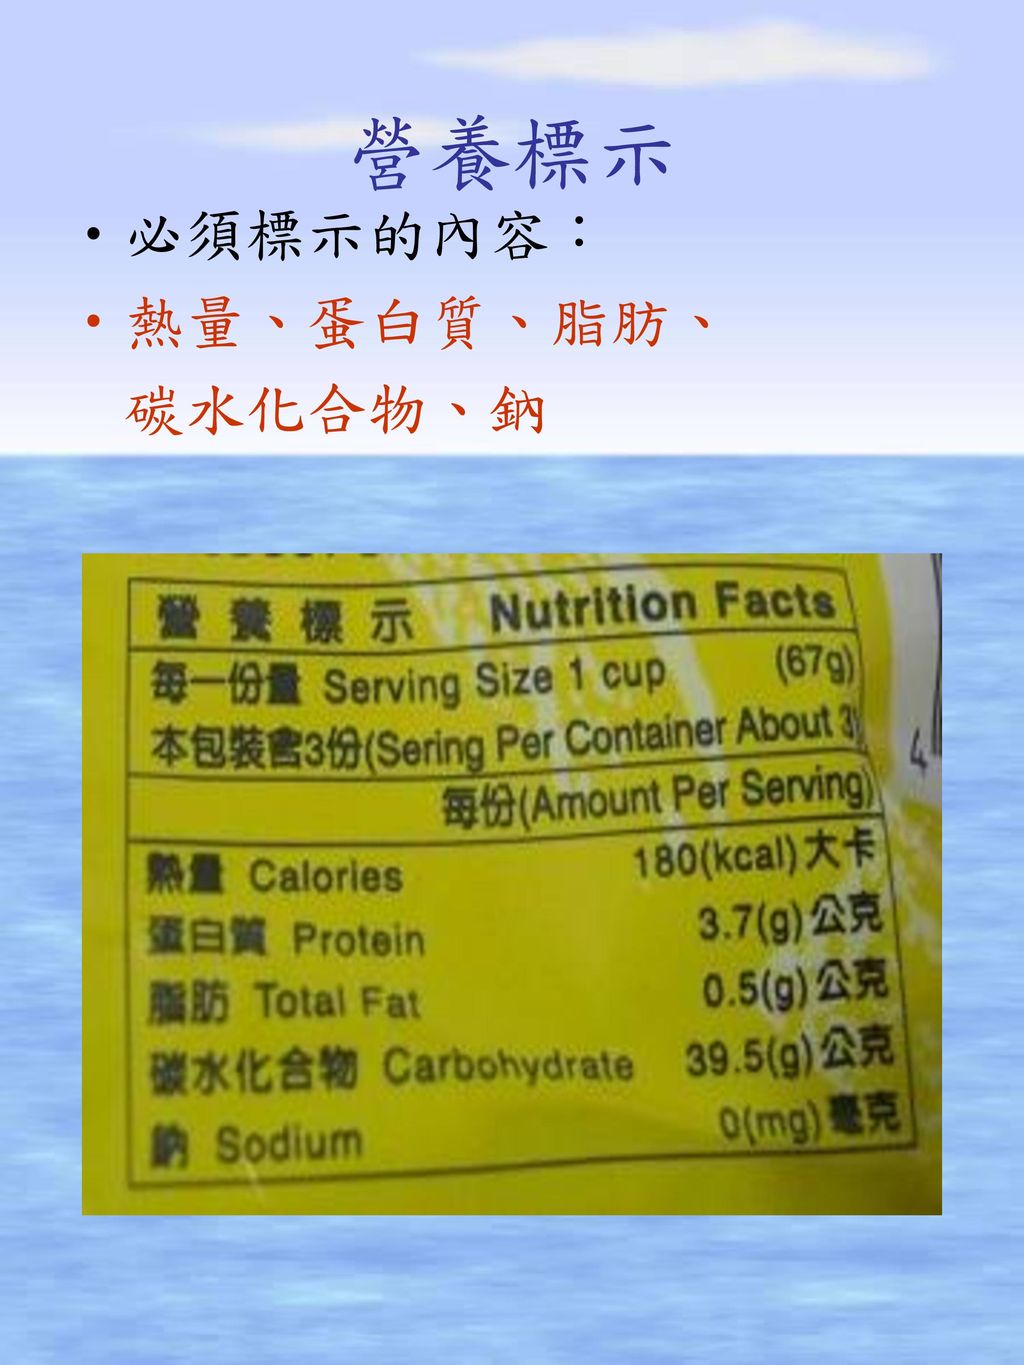 營養標示 必須標示的內容： 熱量、蛋白質、脂肪、 碳水化合物、鈉